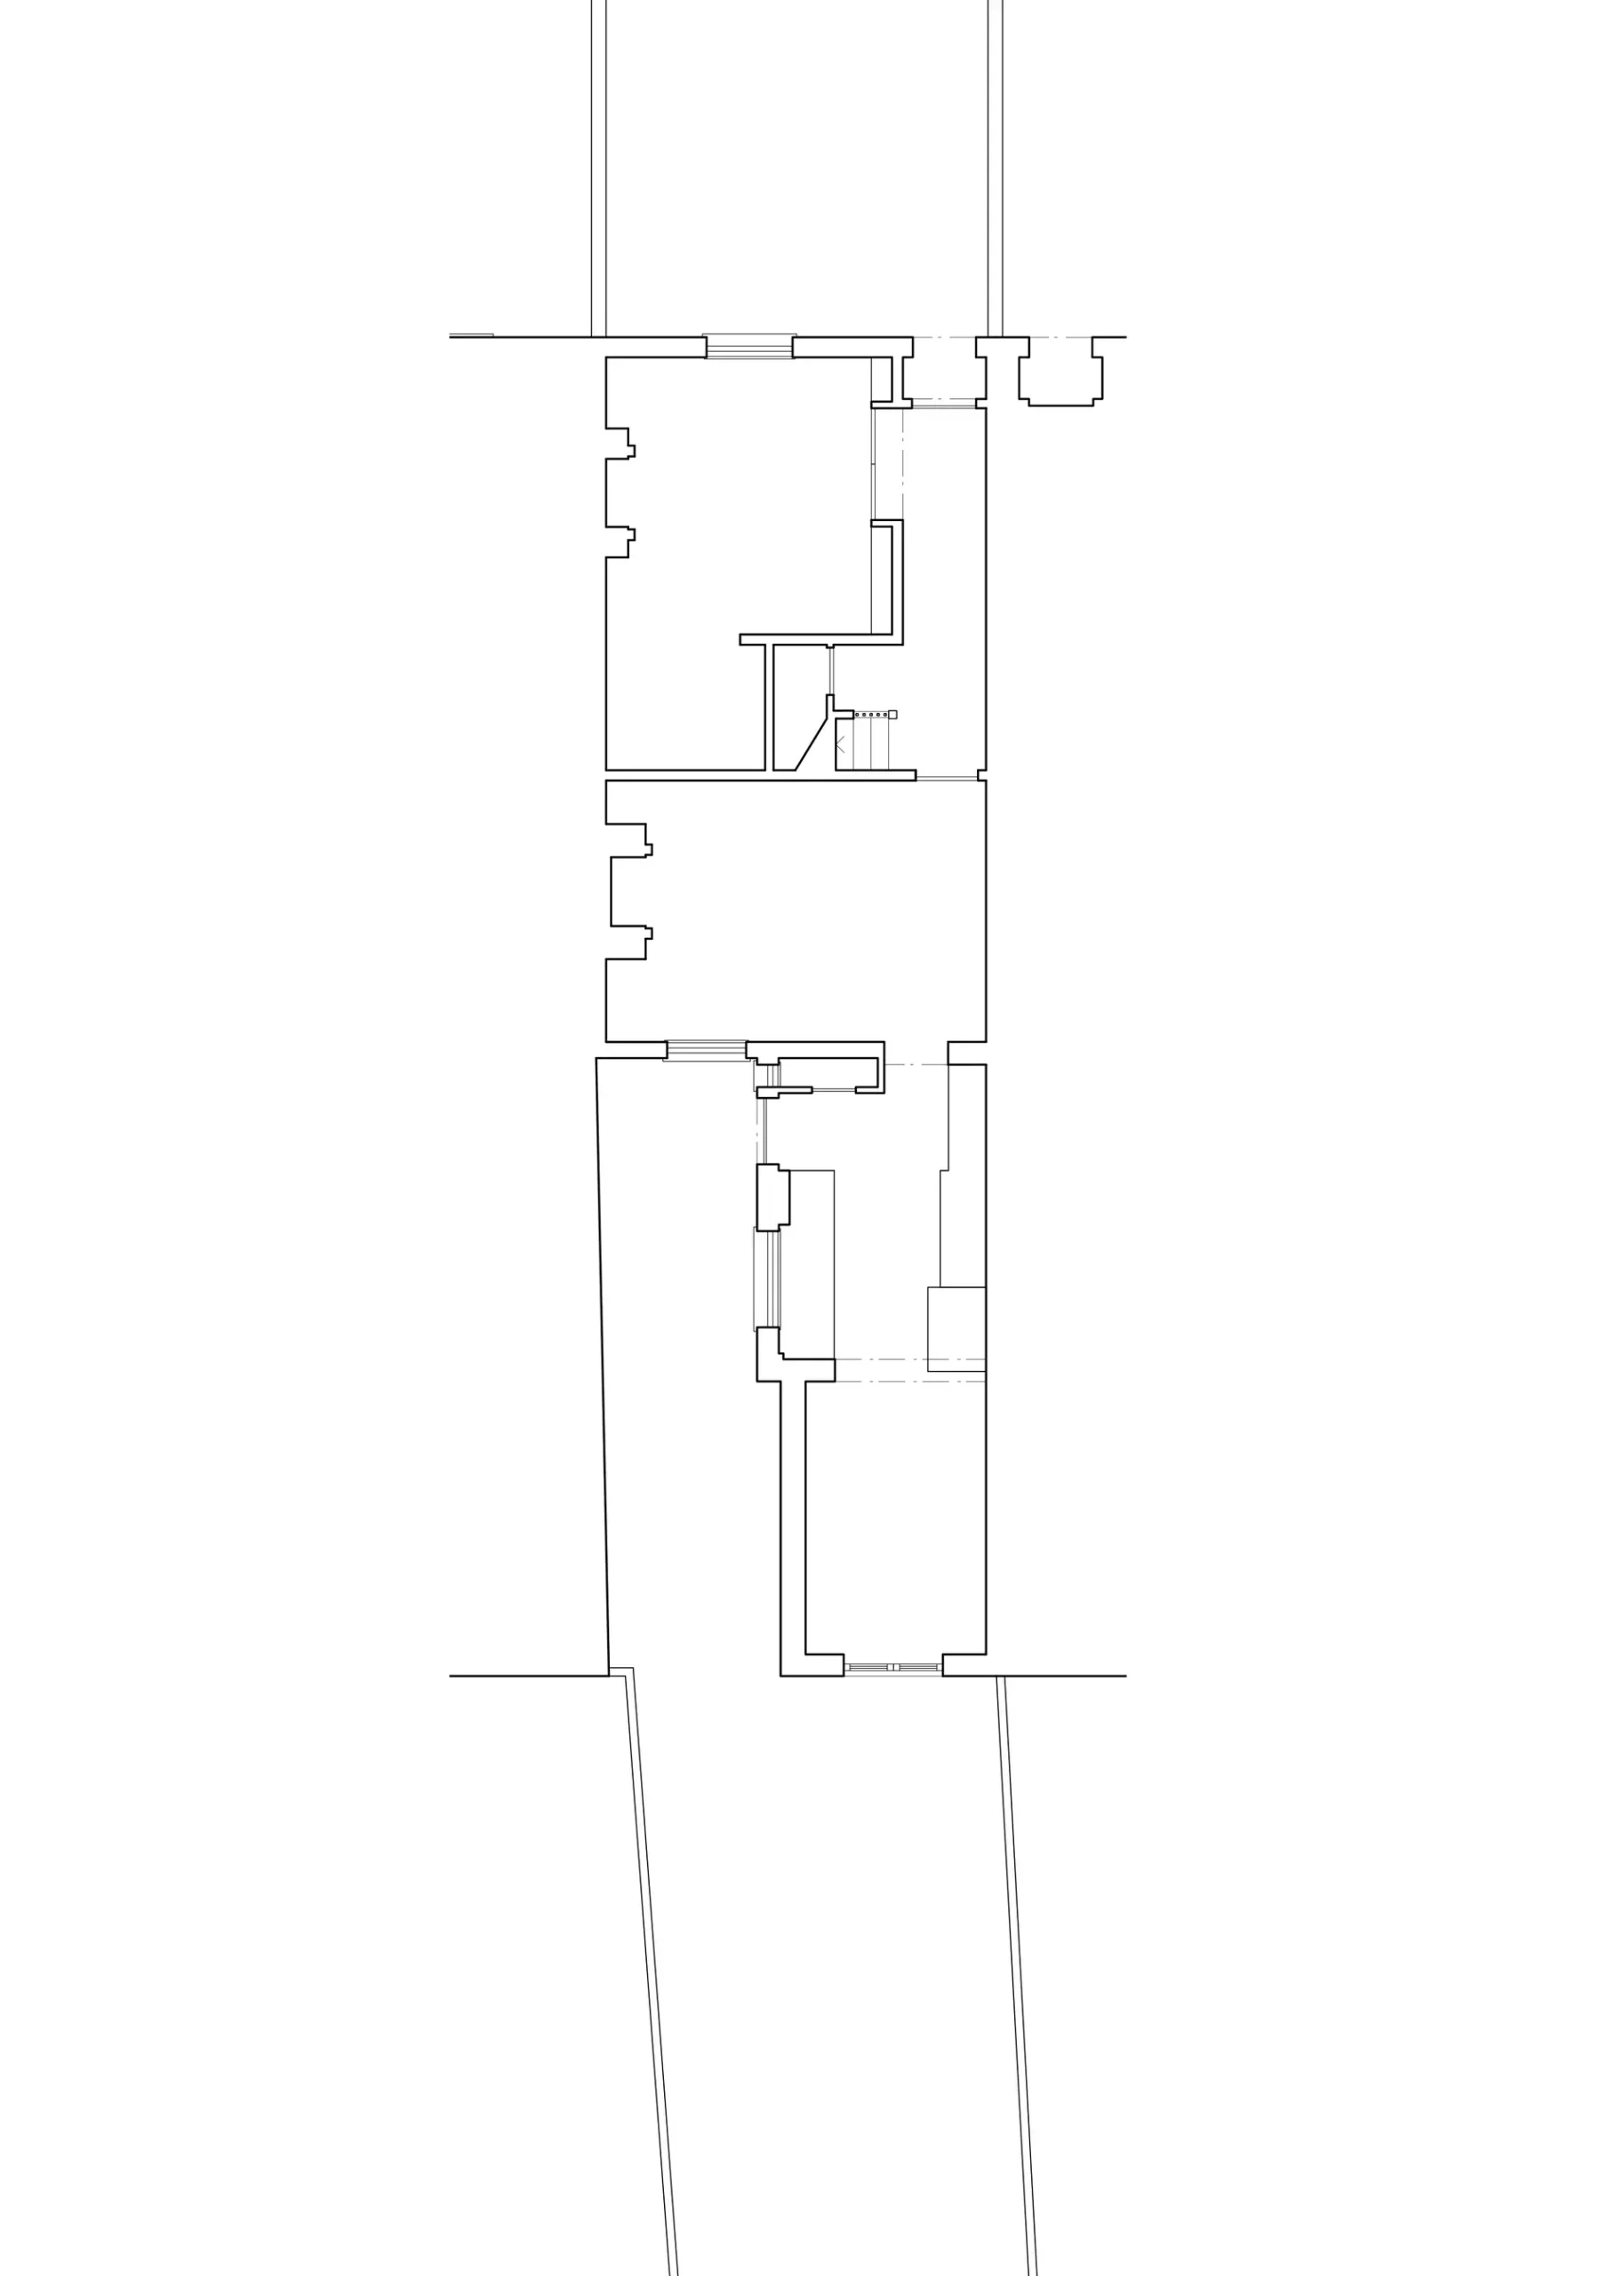 Original ground floor plan